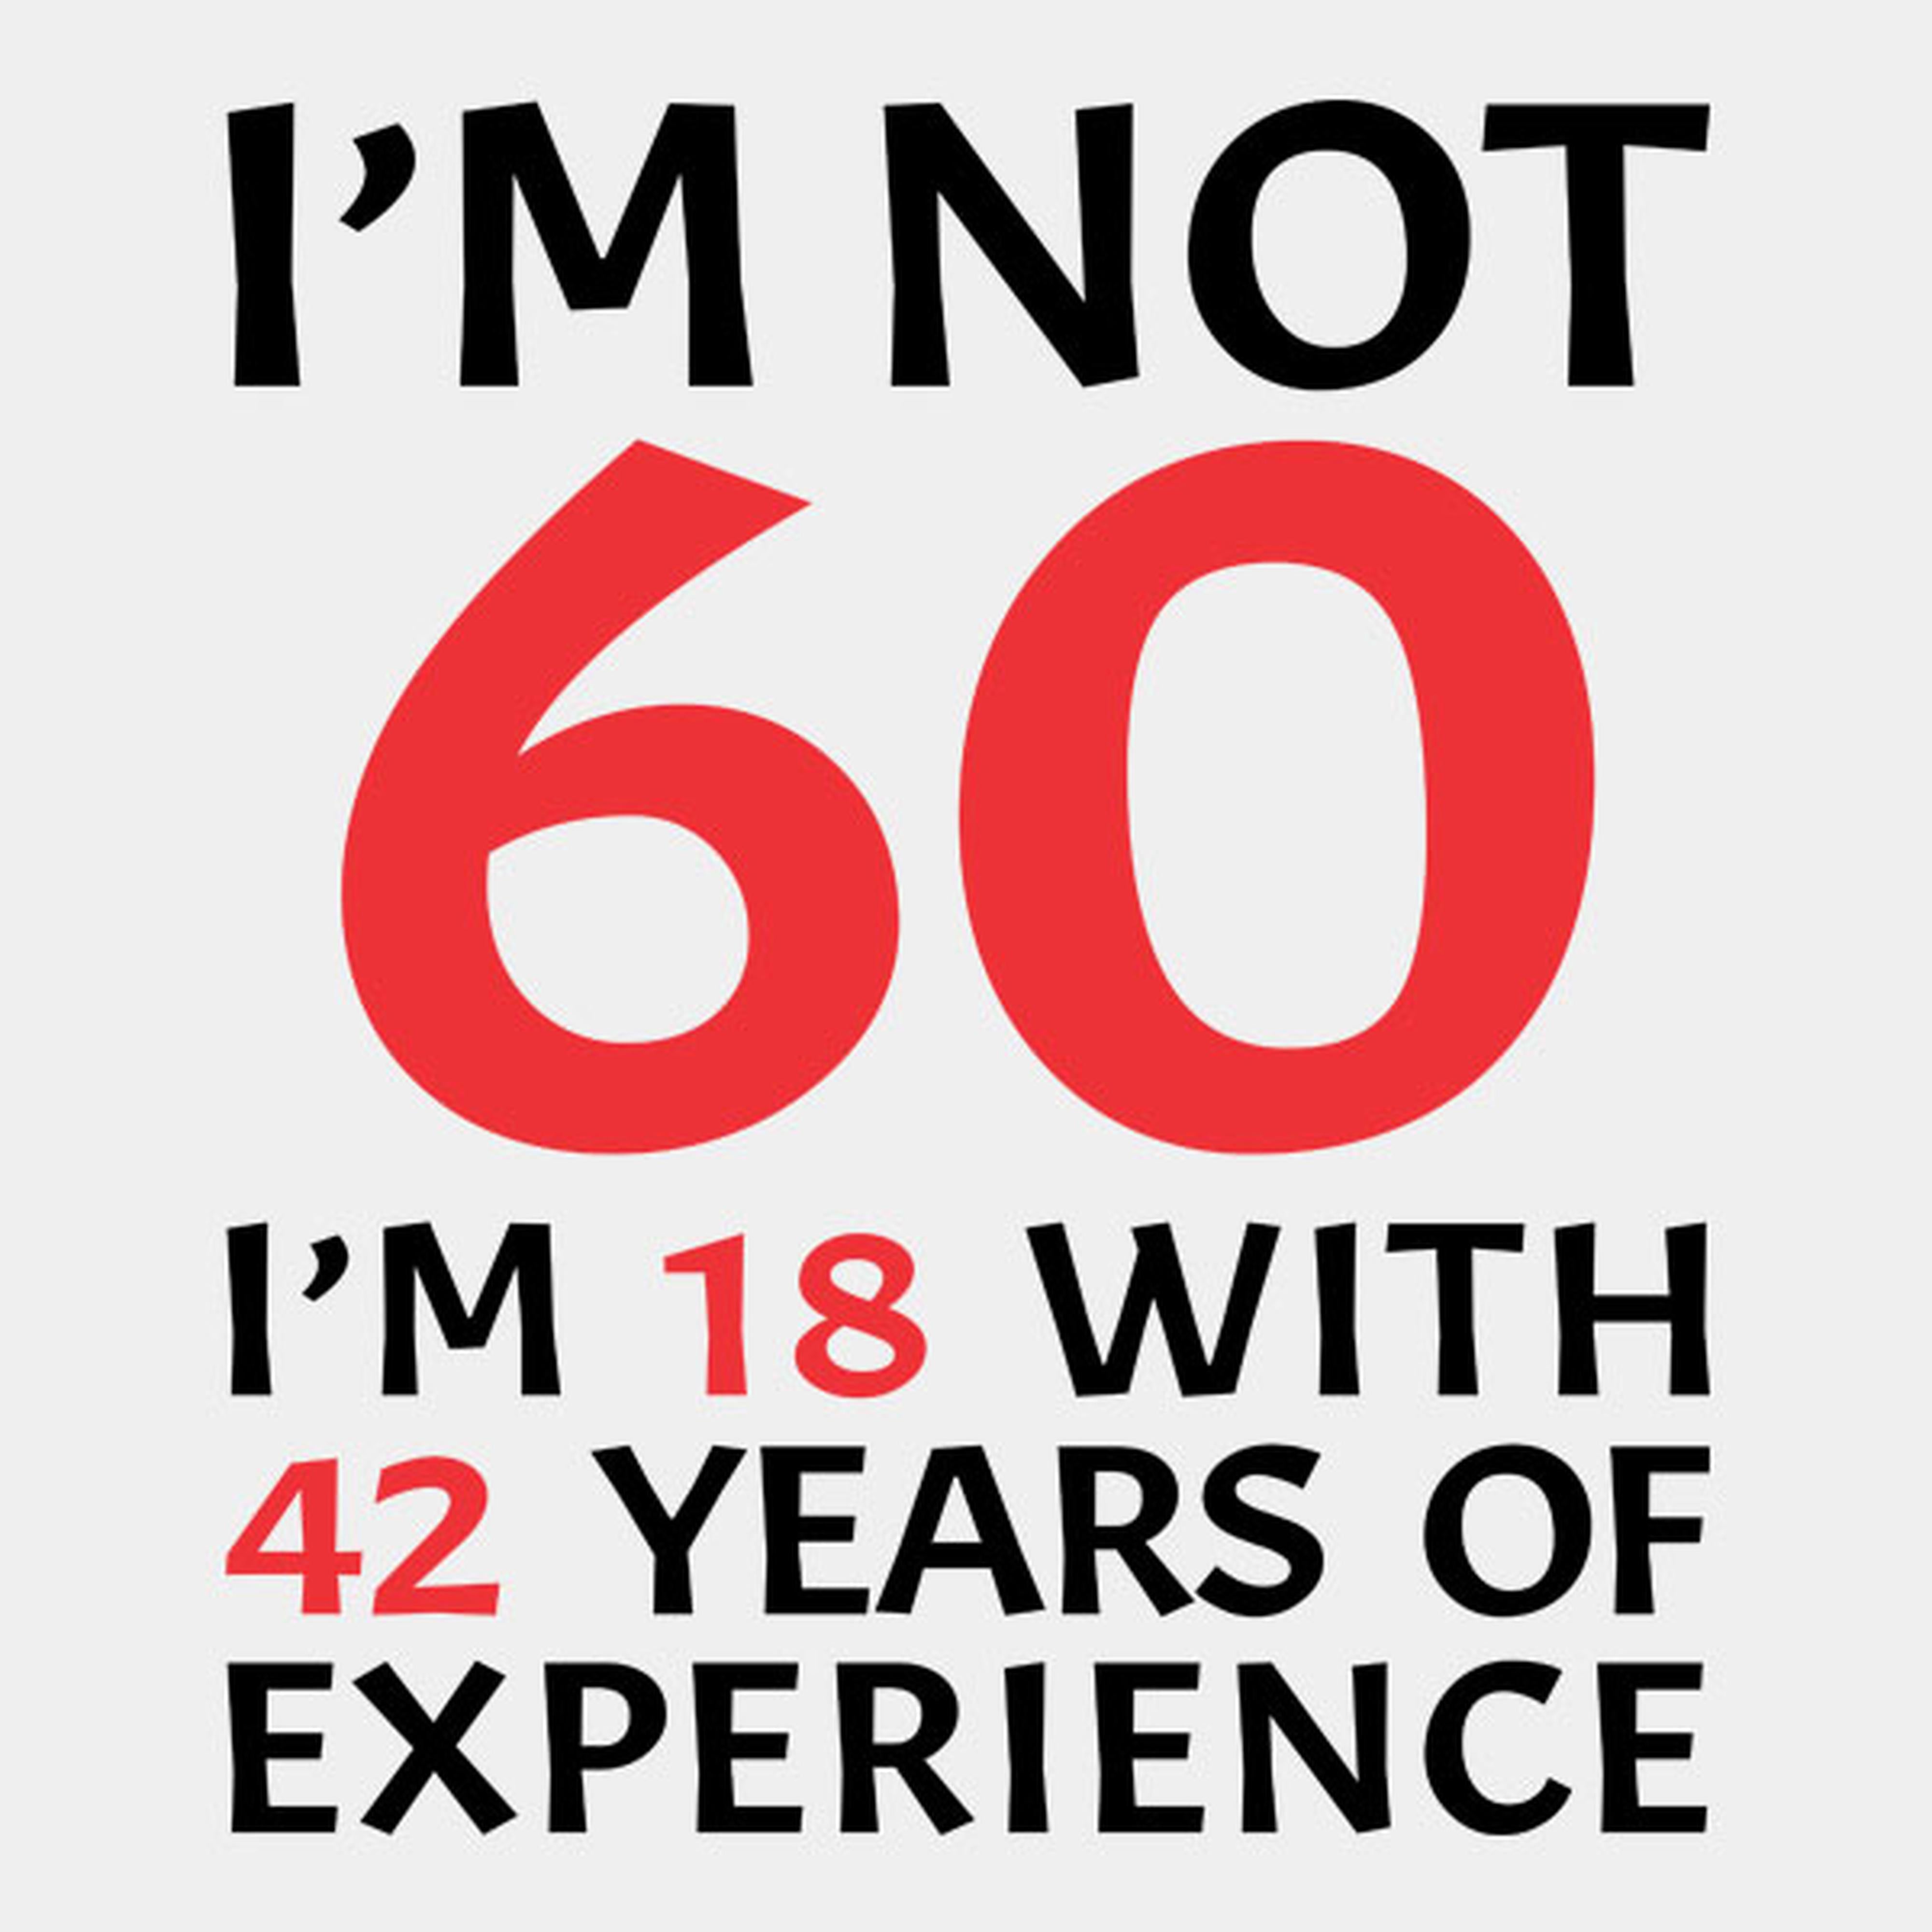 I am not 60 - T-shirt